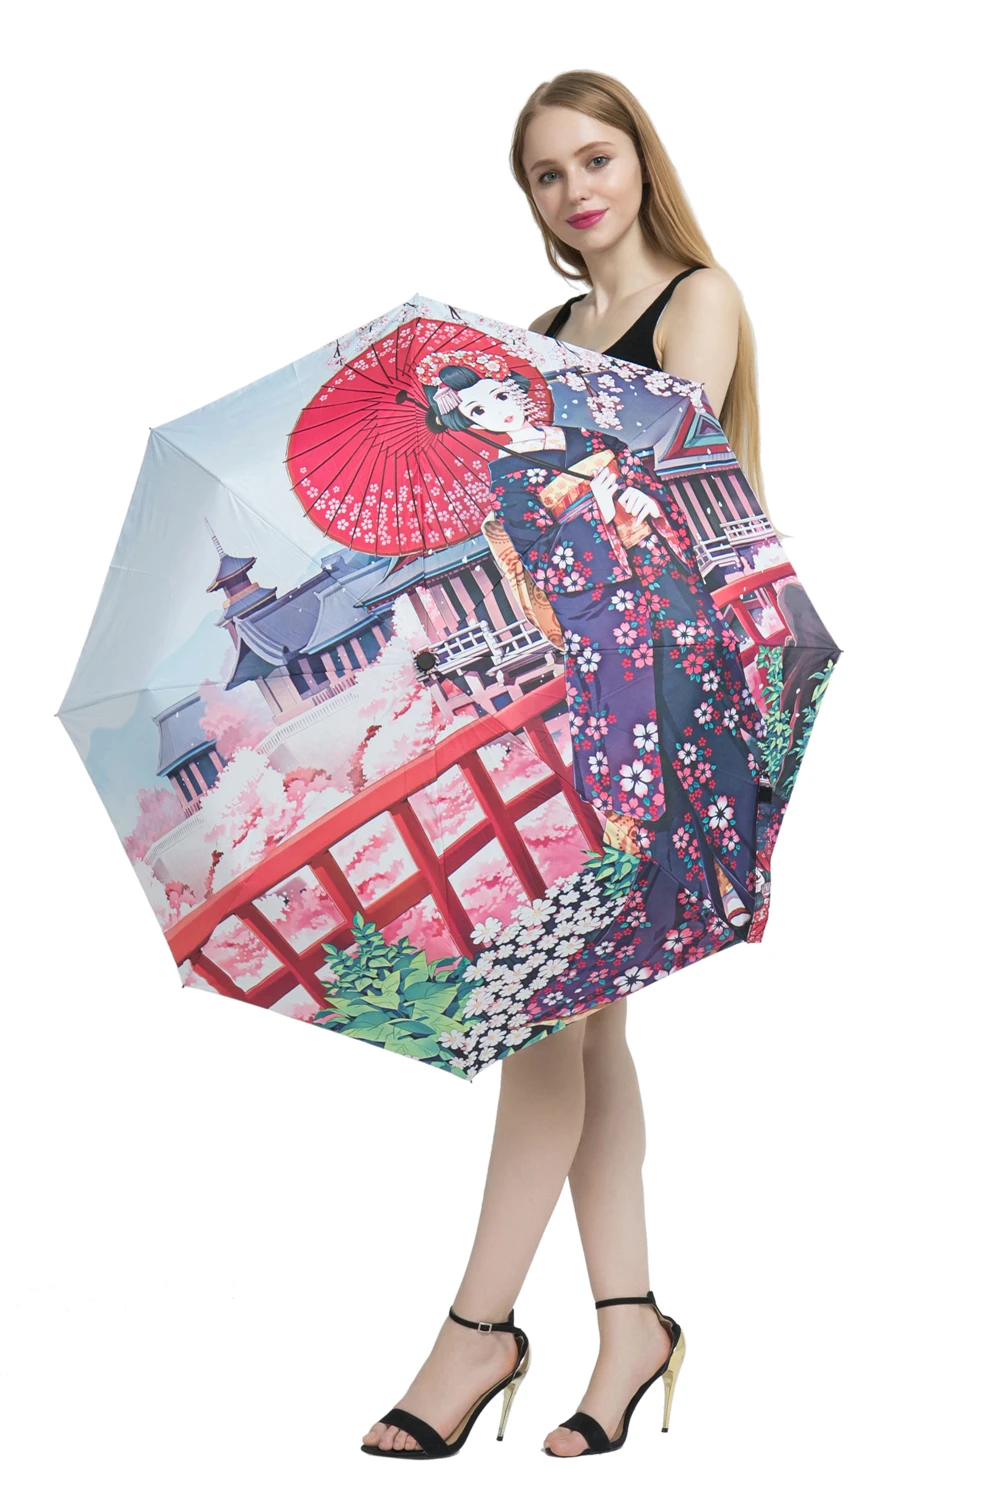 Yesello Зонты лося дизайн женский зонтик картина маслом 3 складной зонтик Леди Портативный девочка подарок для детей